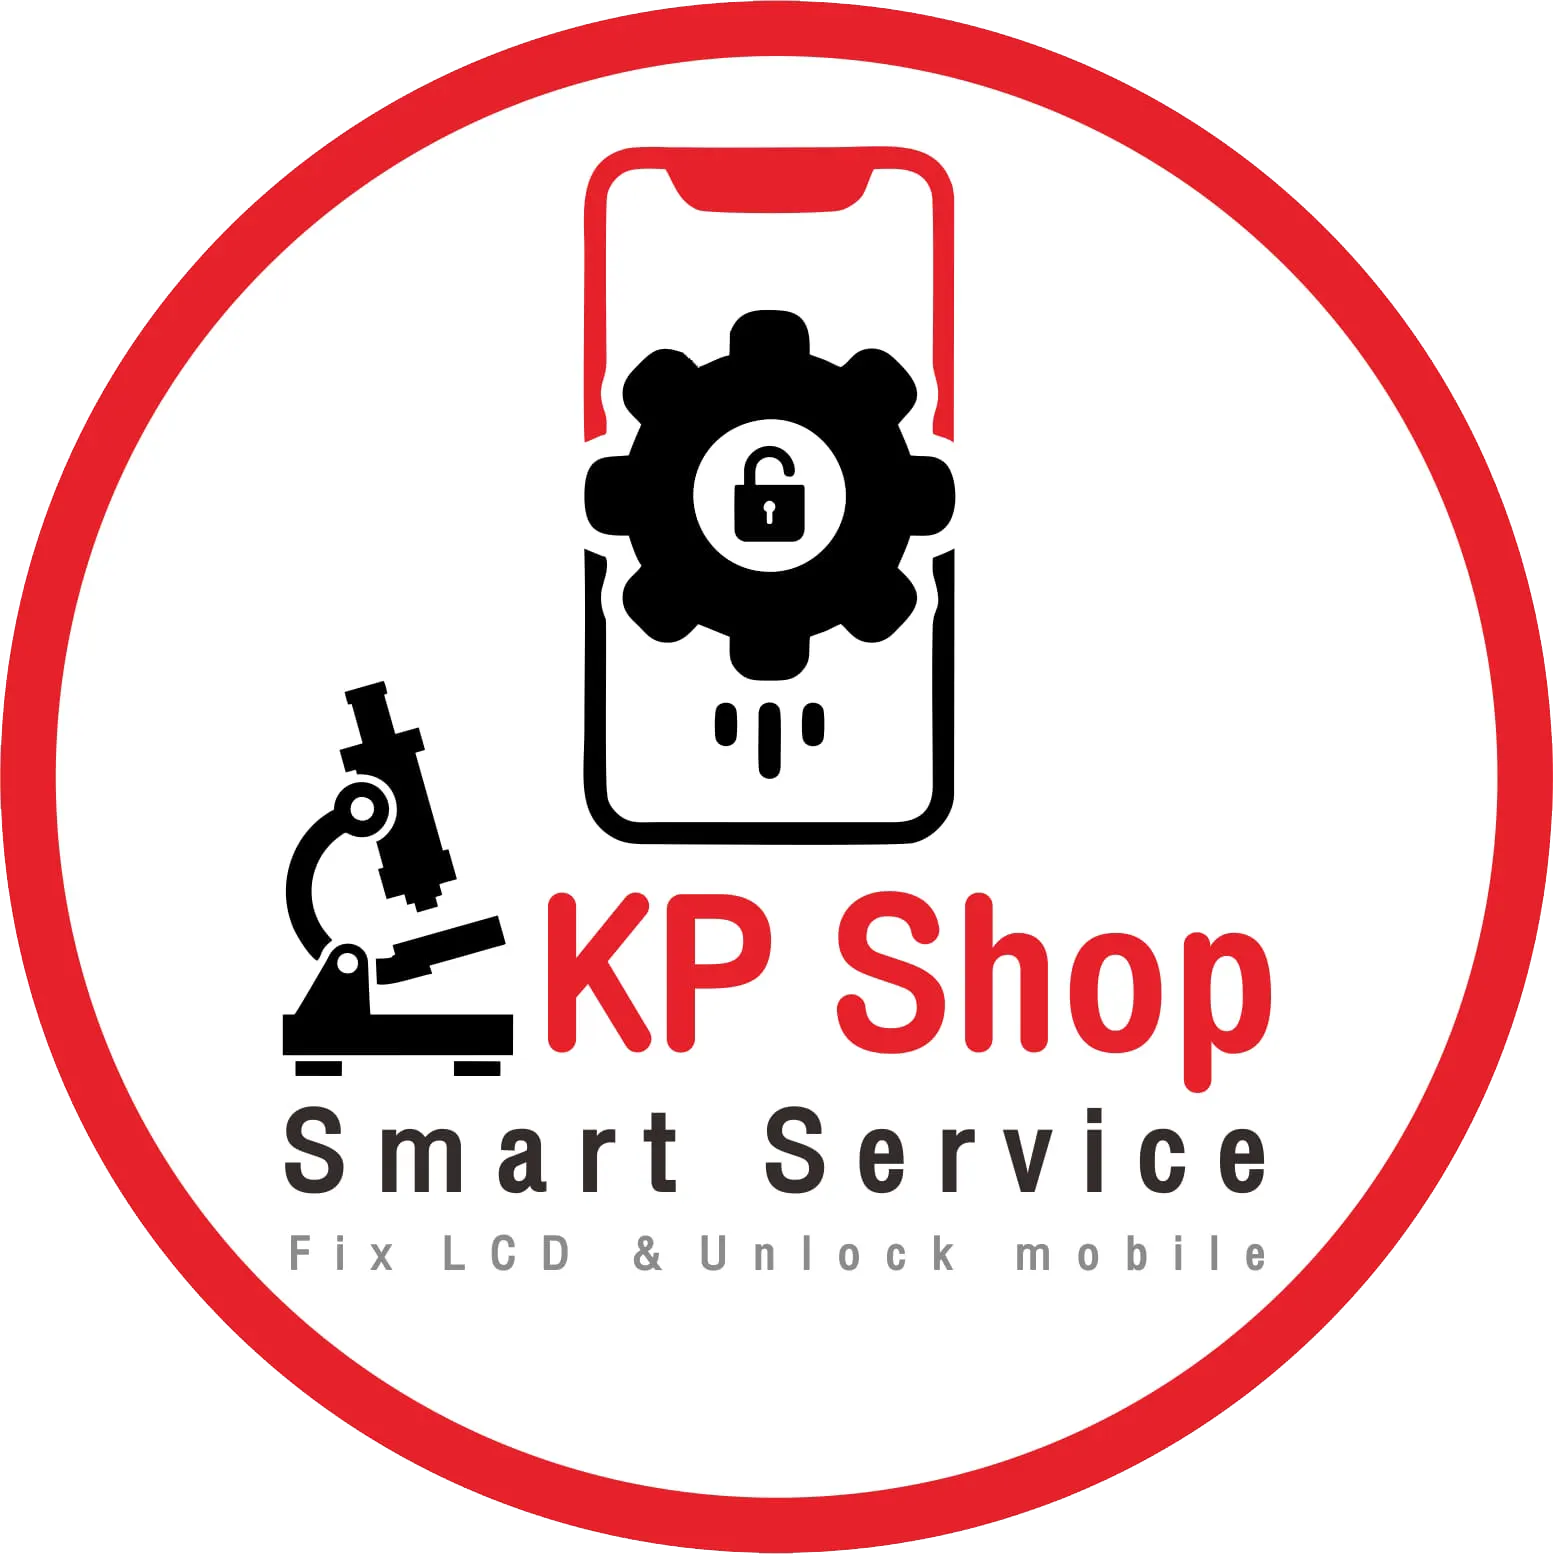 KP Shop Smart Service